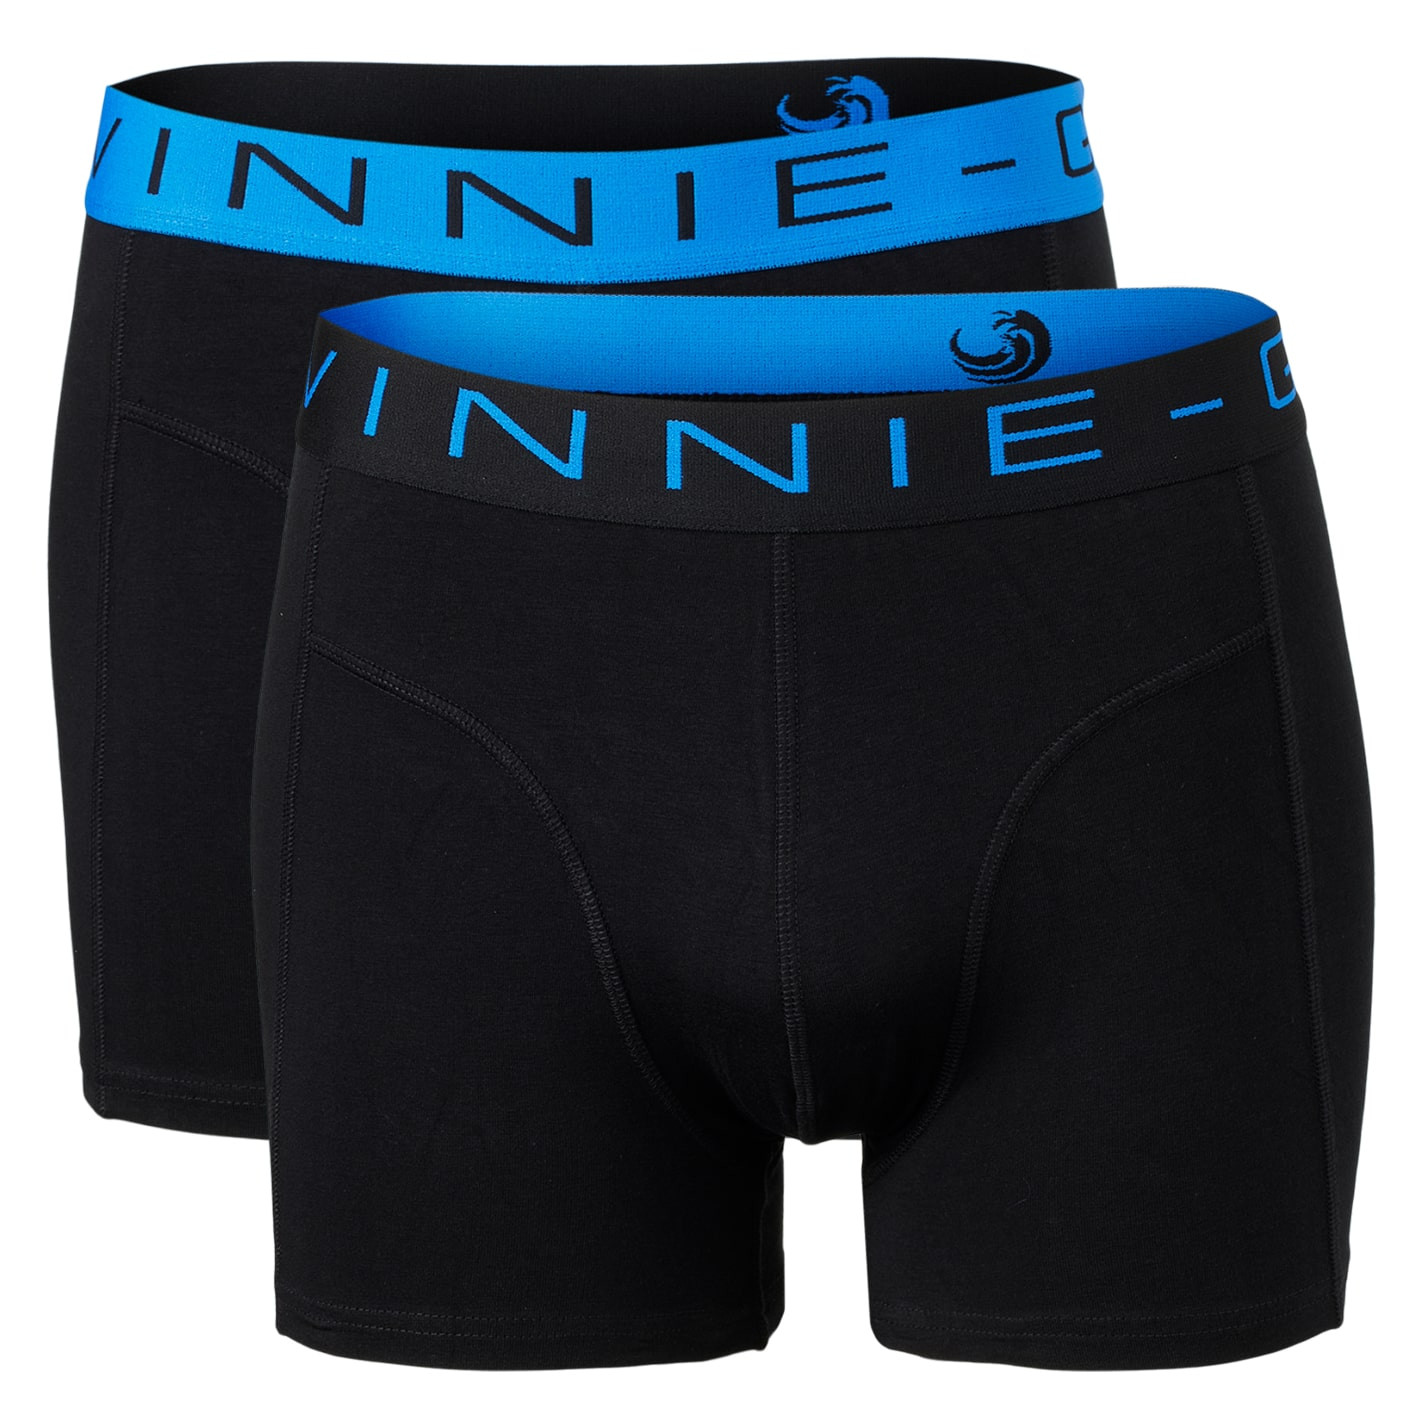 Vinnie-G Boxershorts 2-pack Black/Blue